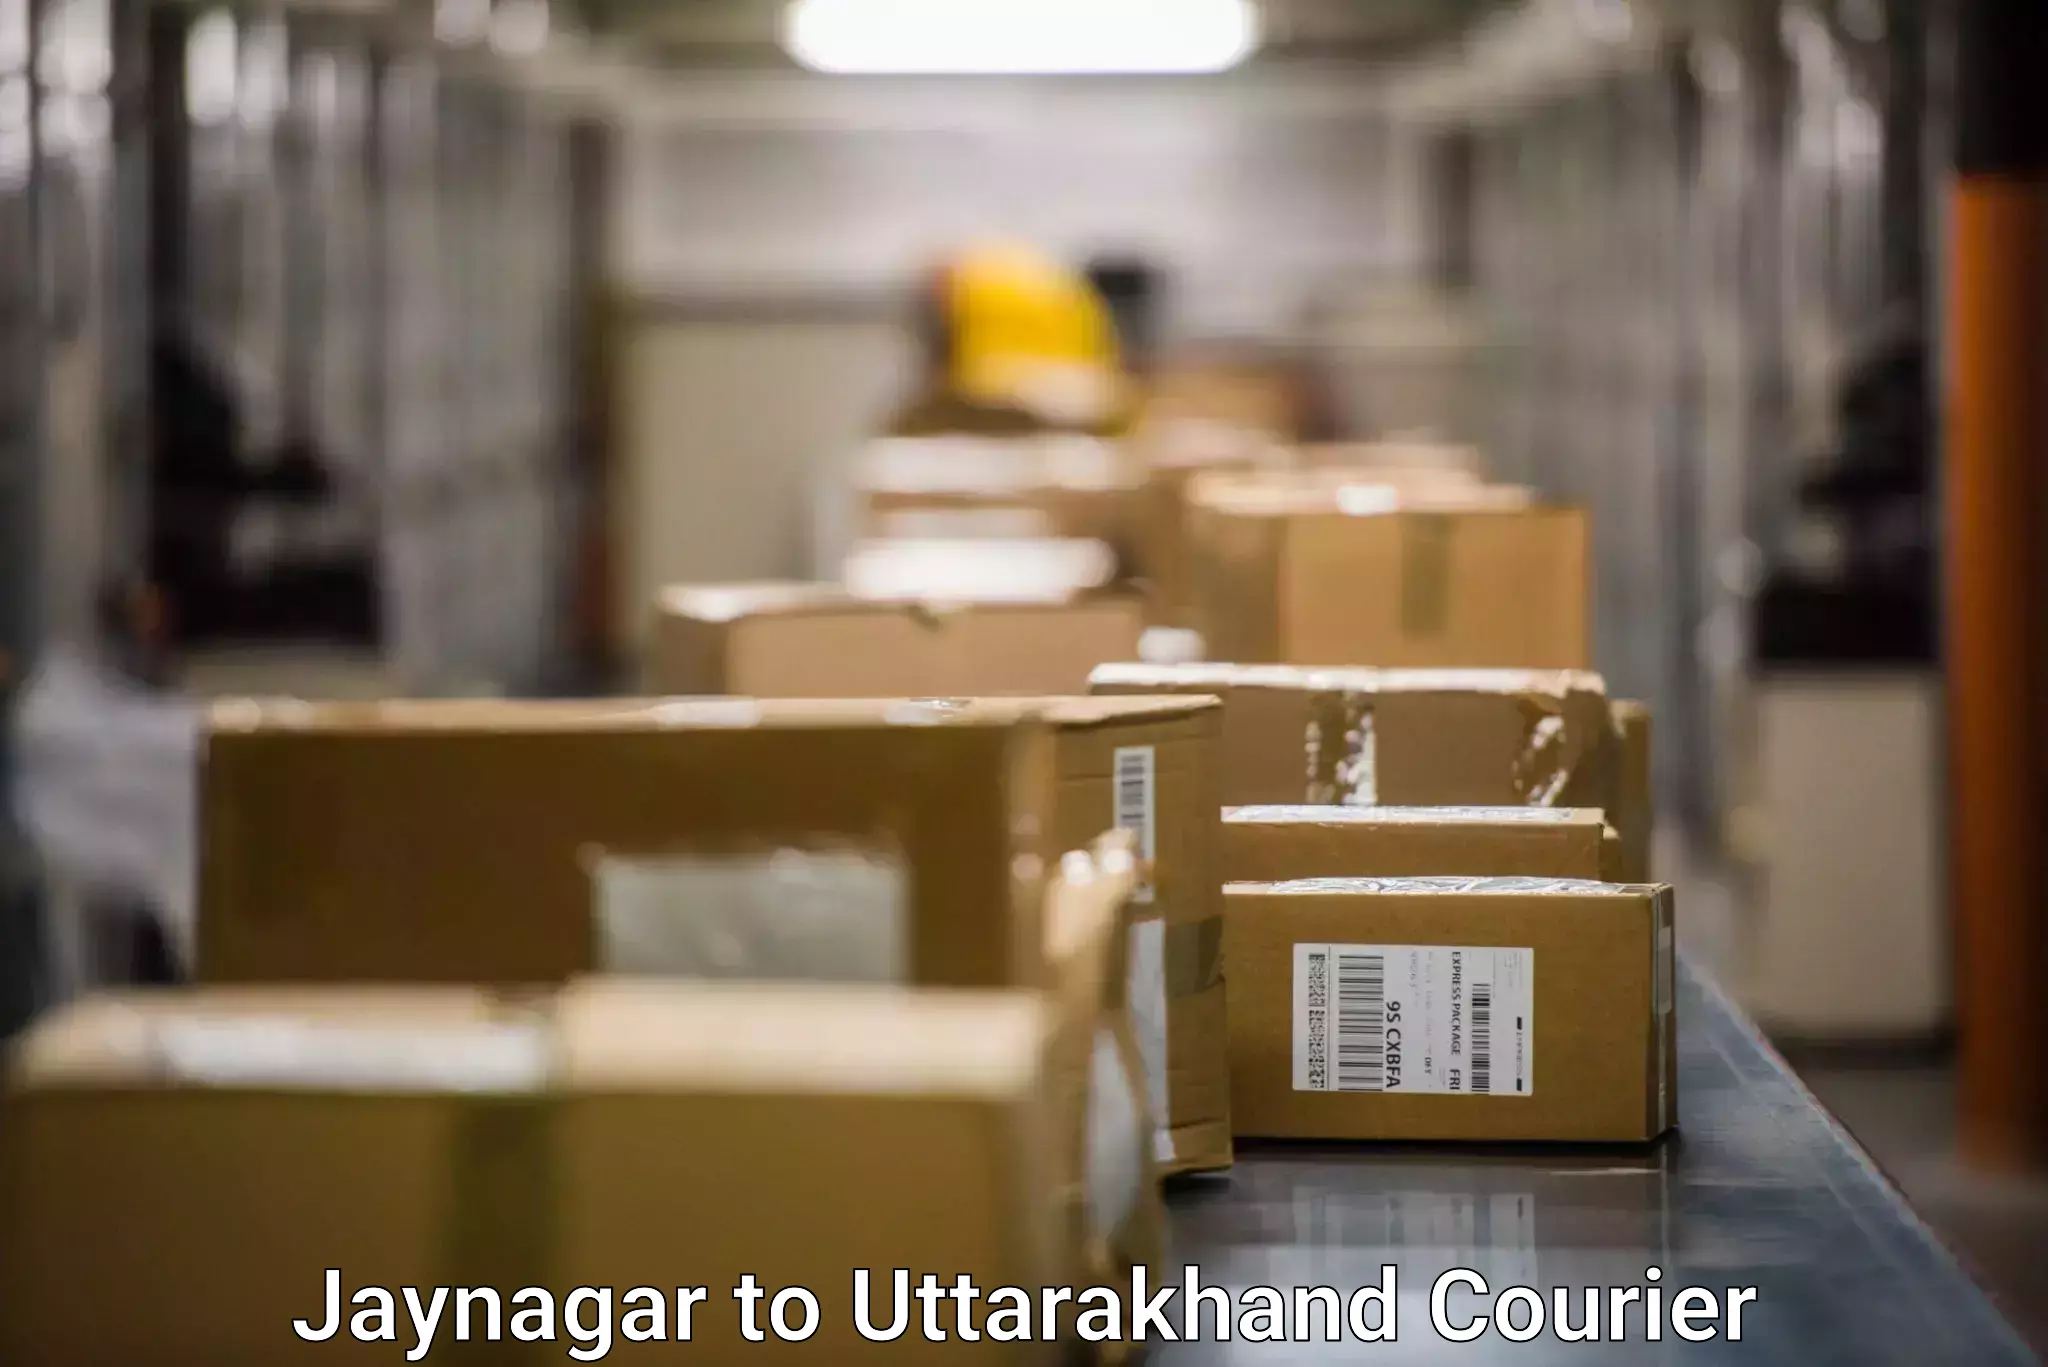 Ocean freight courier Jaynagar to Haridwar